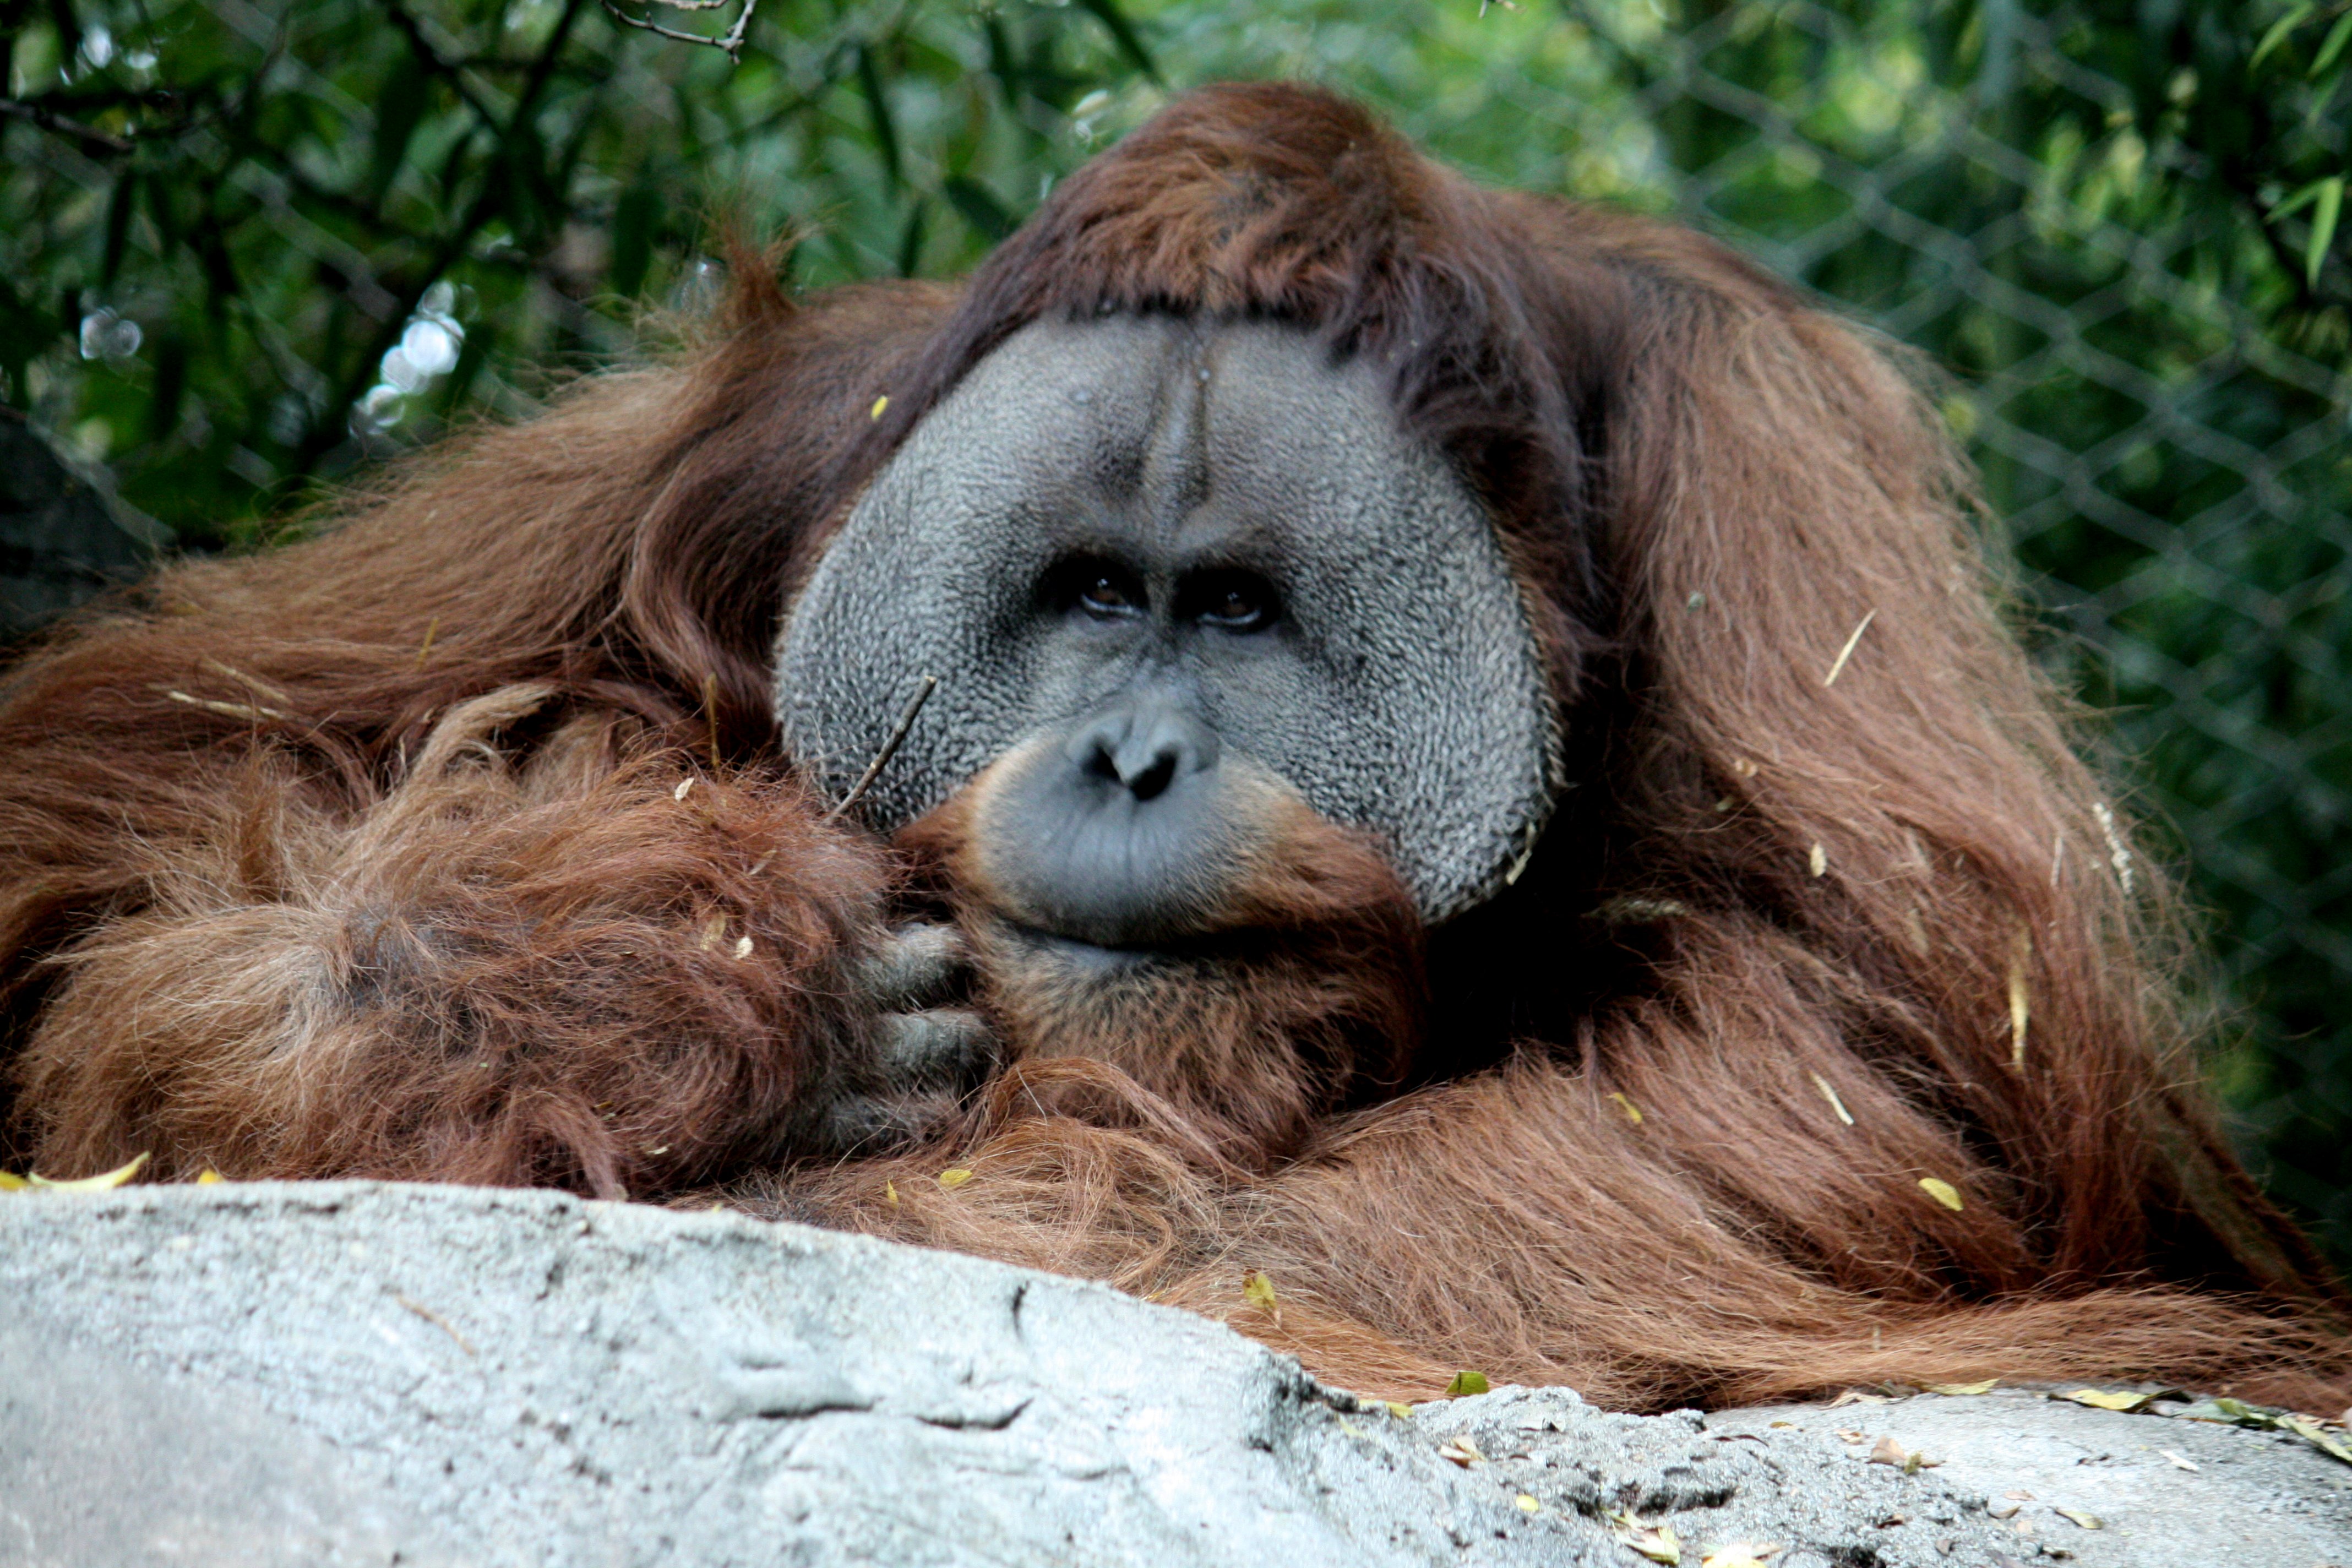 Orangutan14